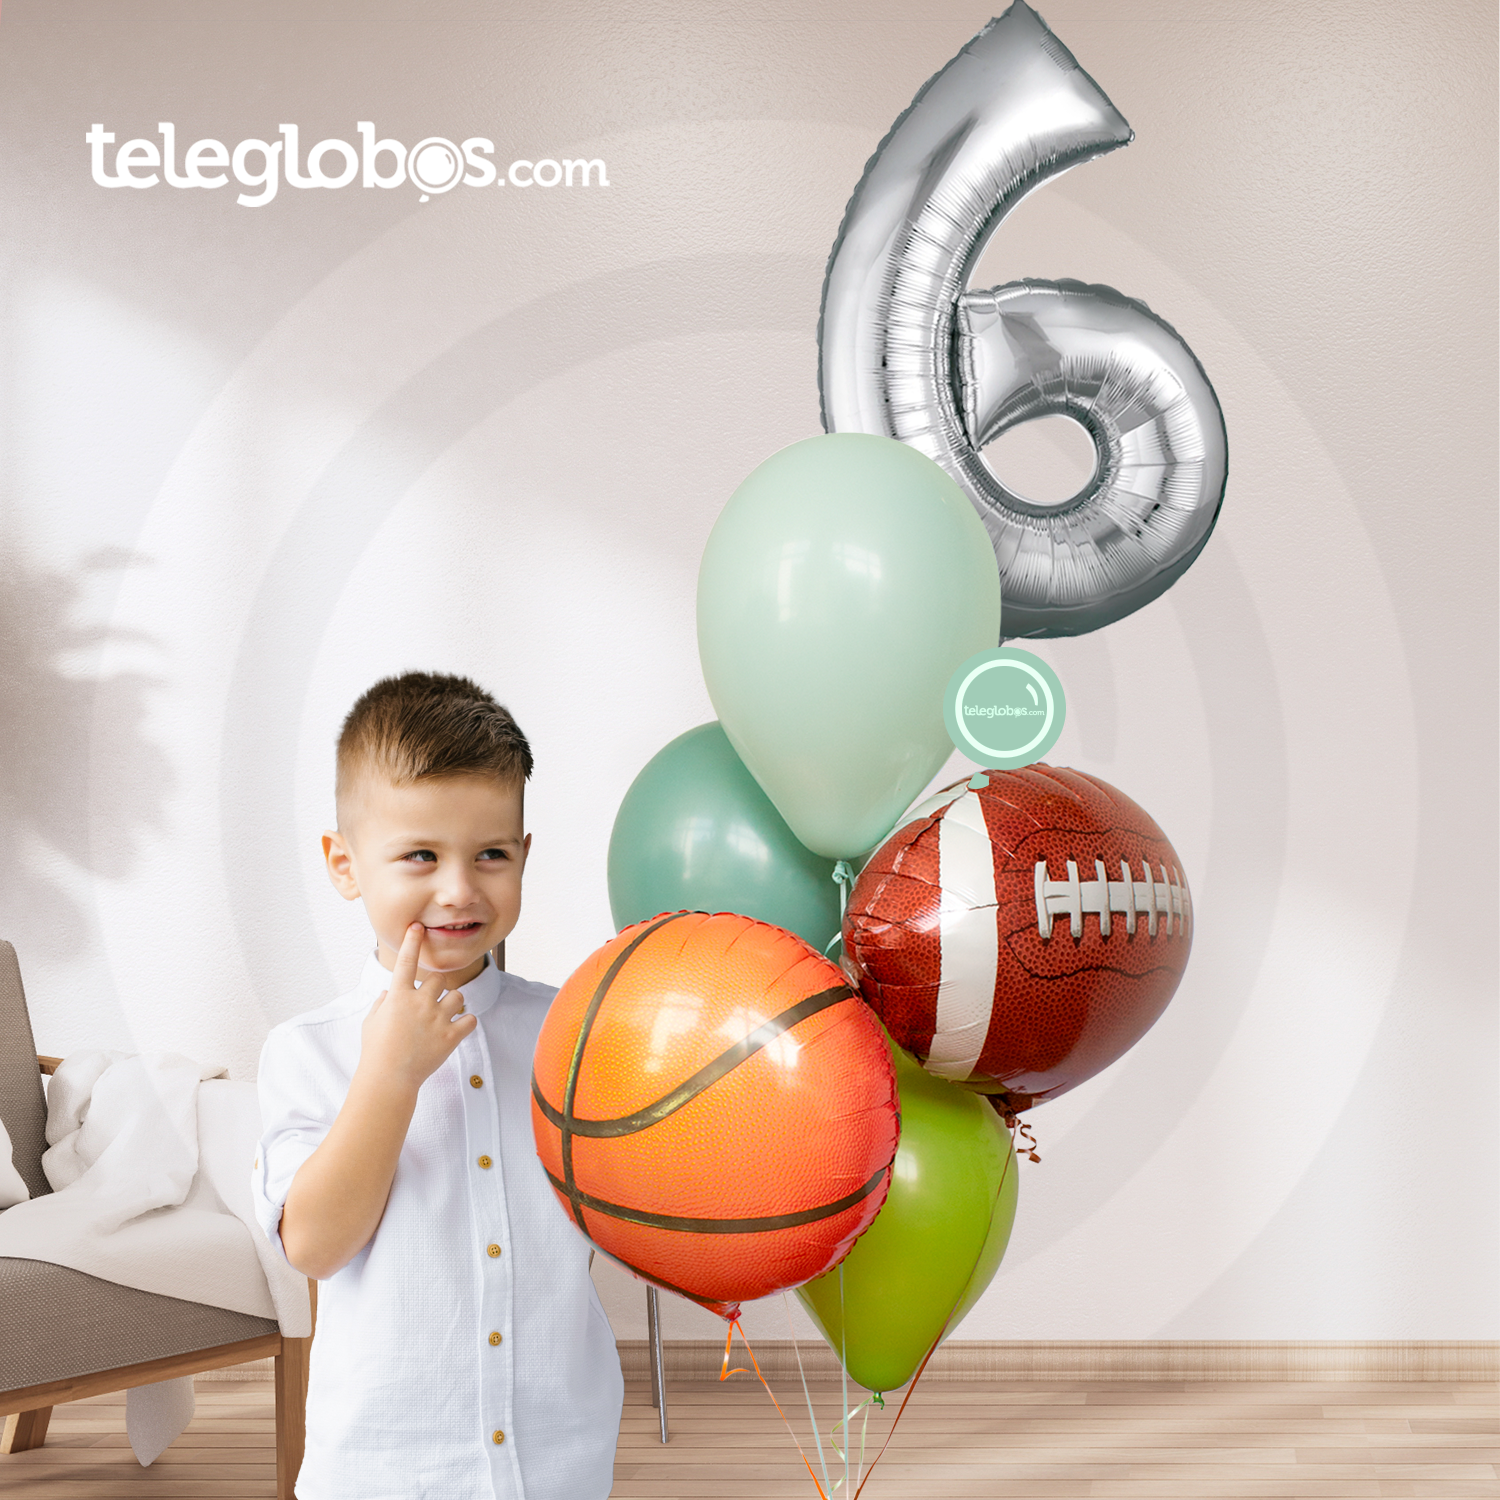 Arreglos de Globos para Cumpleaños de Niños Tienda de Globos CDMX Teleglobos